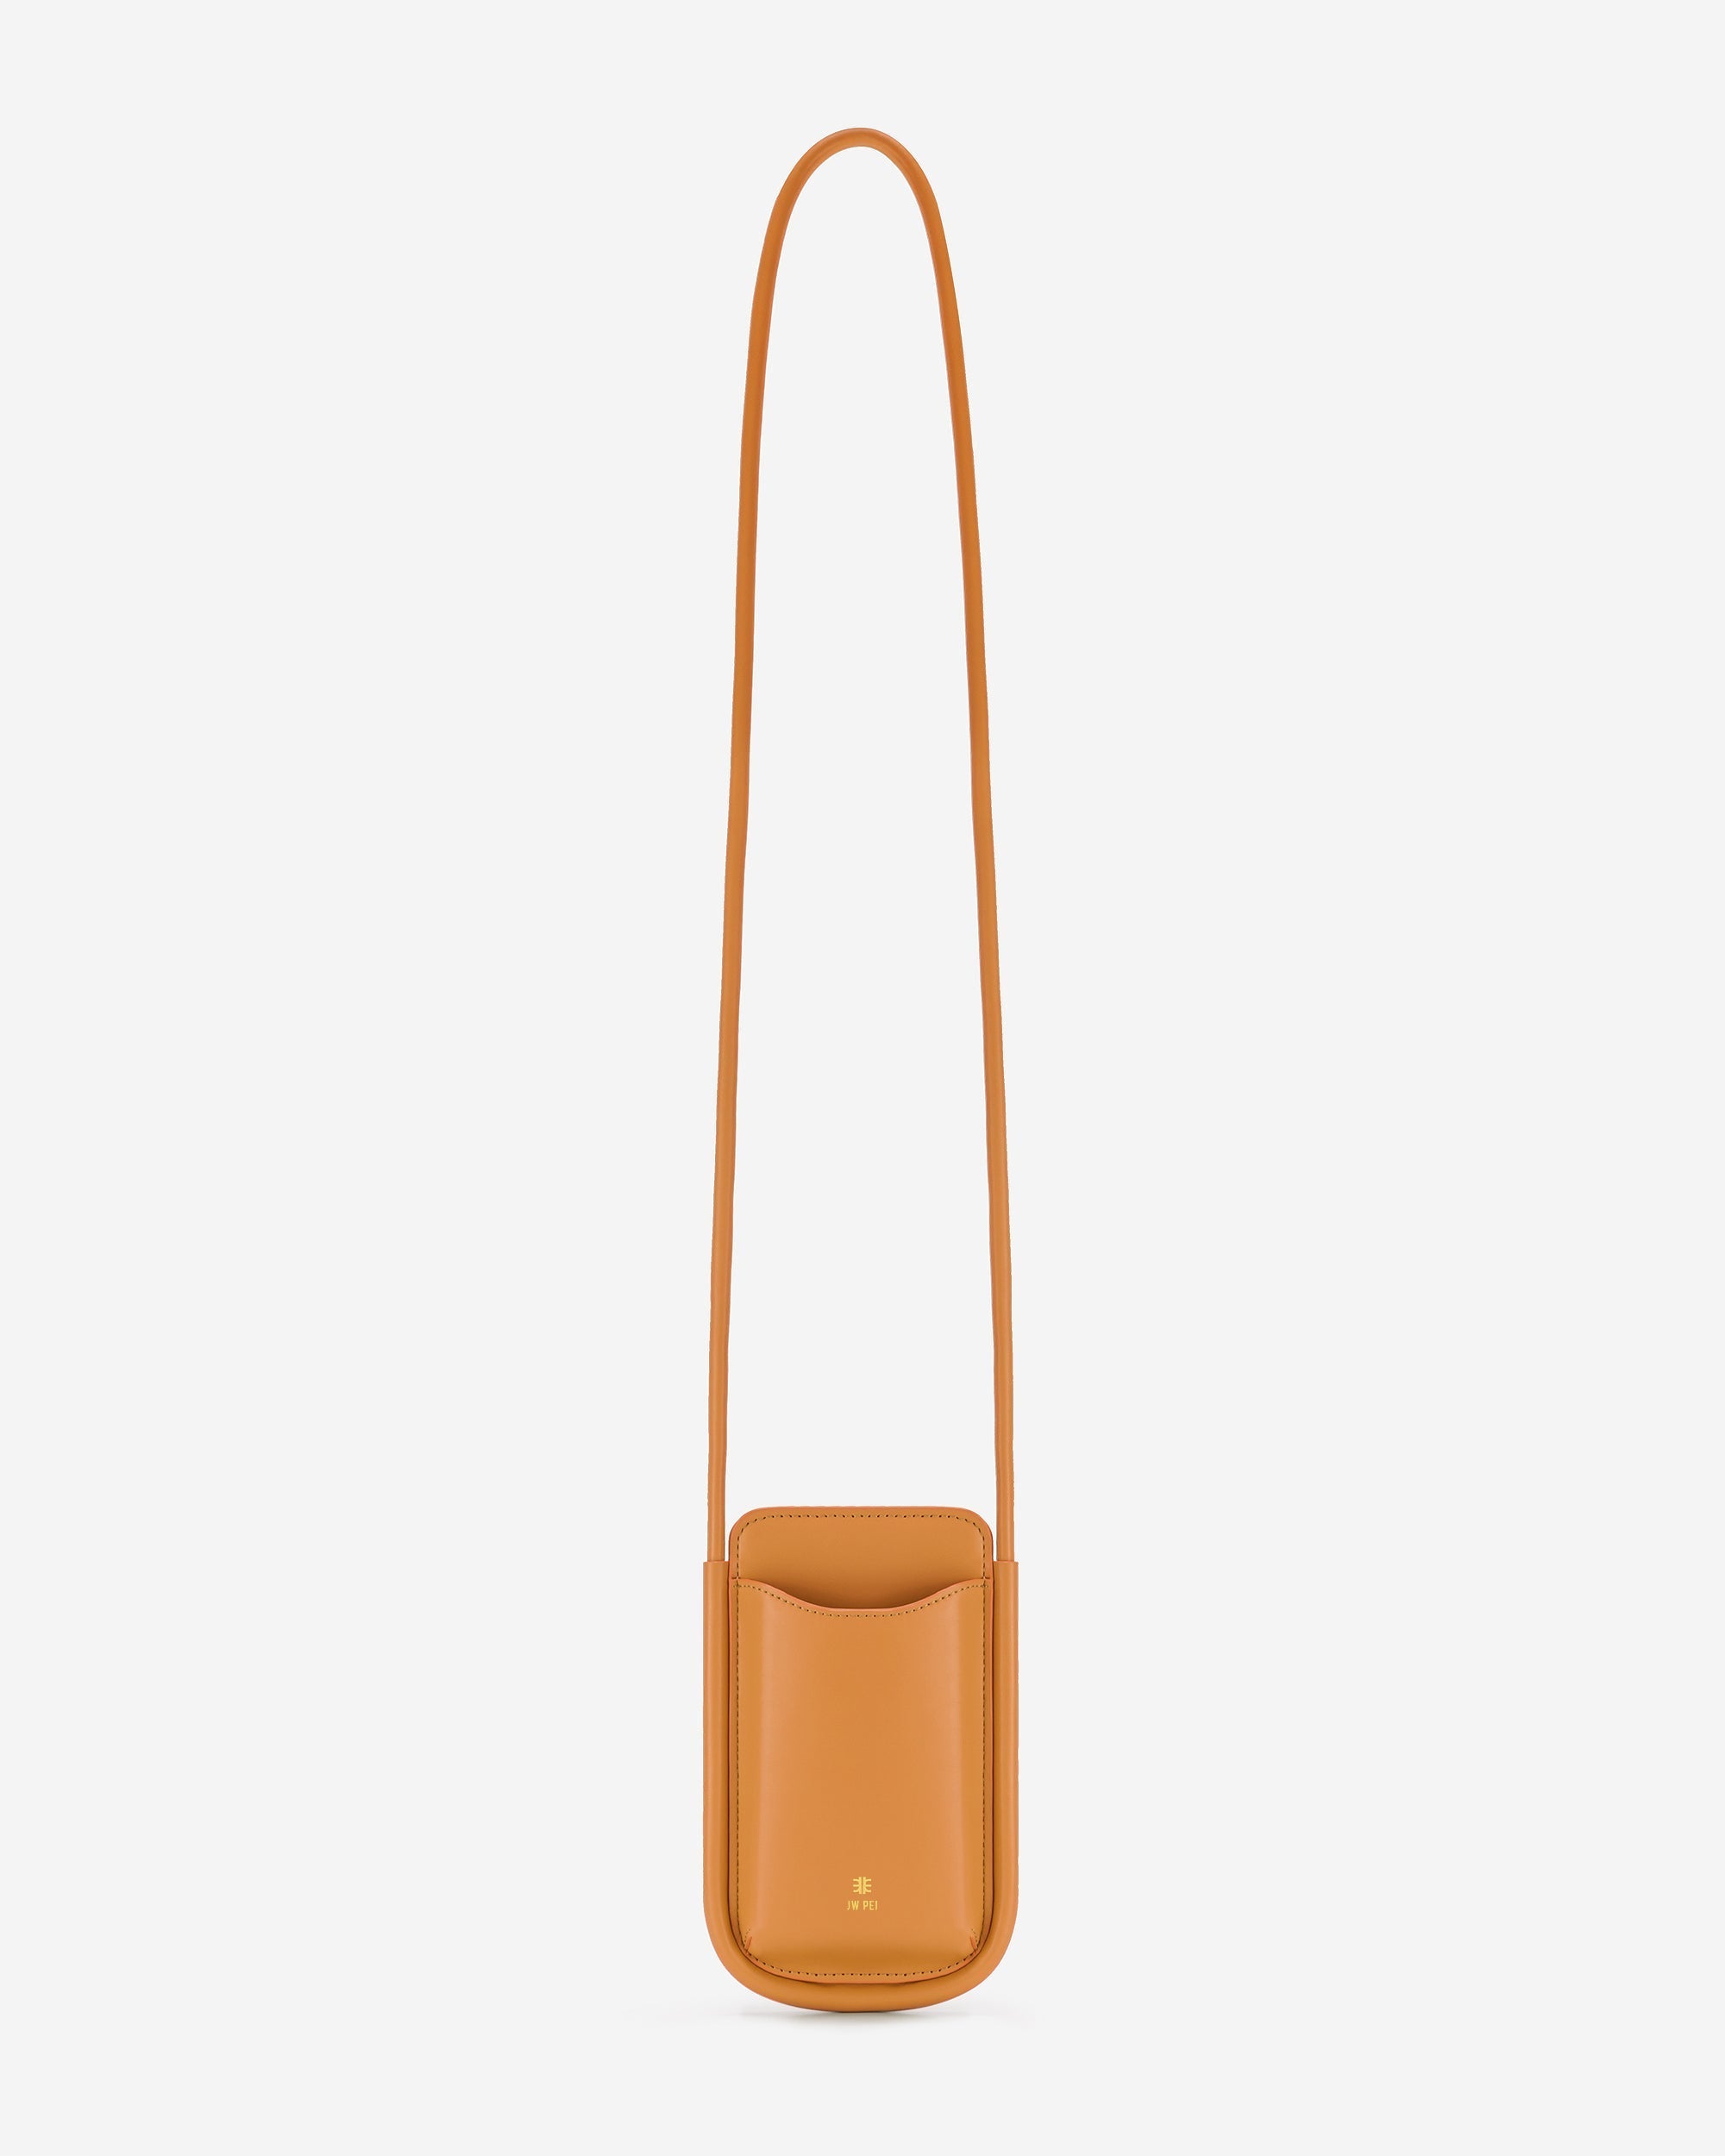 Ayla 手機包 - 橙色